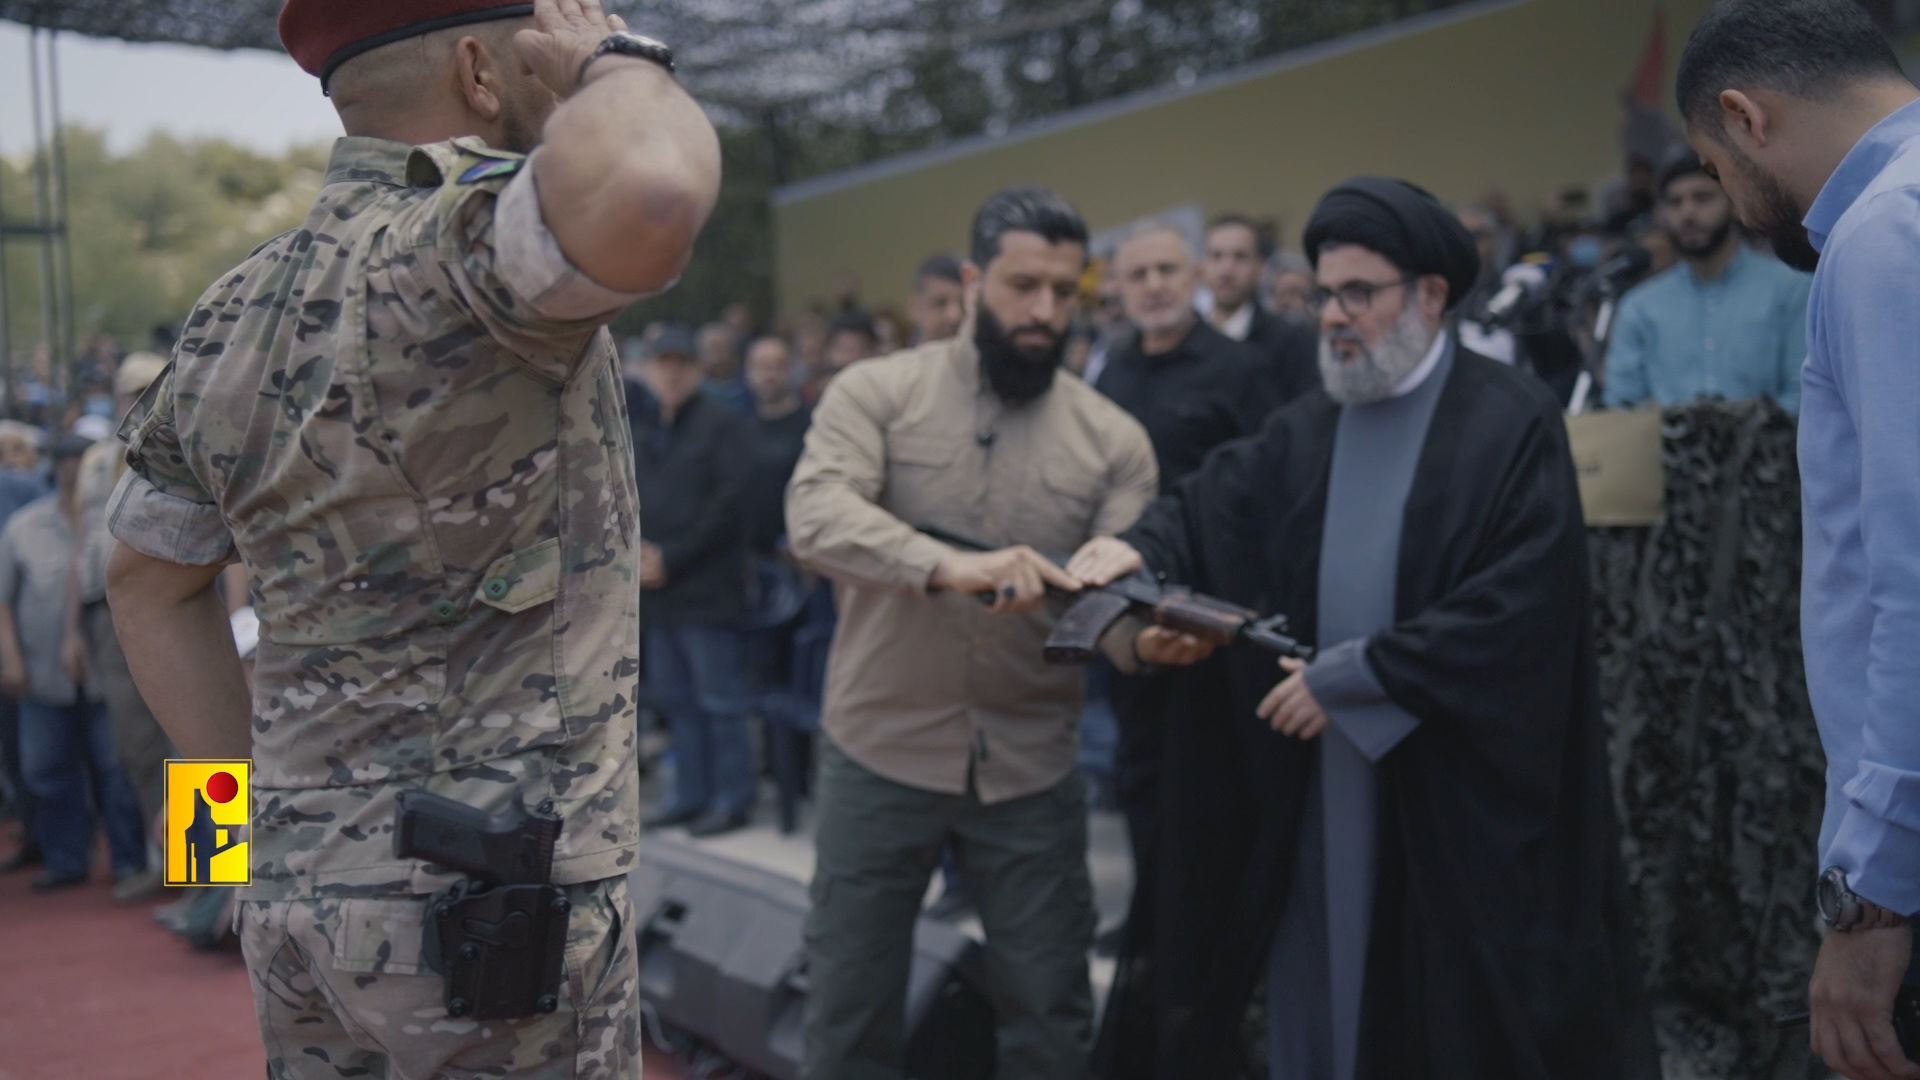 مناورة المقاومة الاسلامية - حزب الله - مشاهد الاعلام الحربي (18)